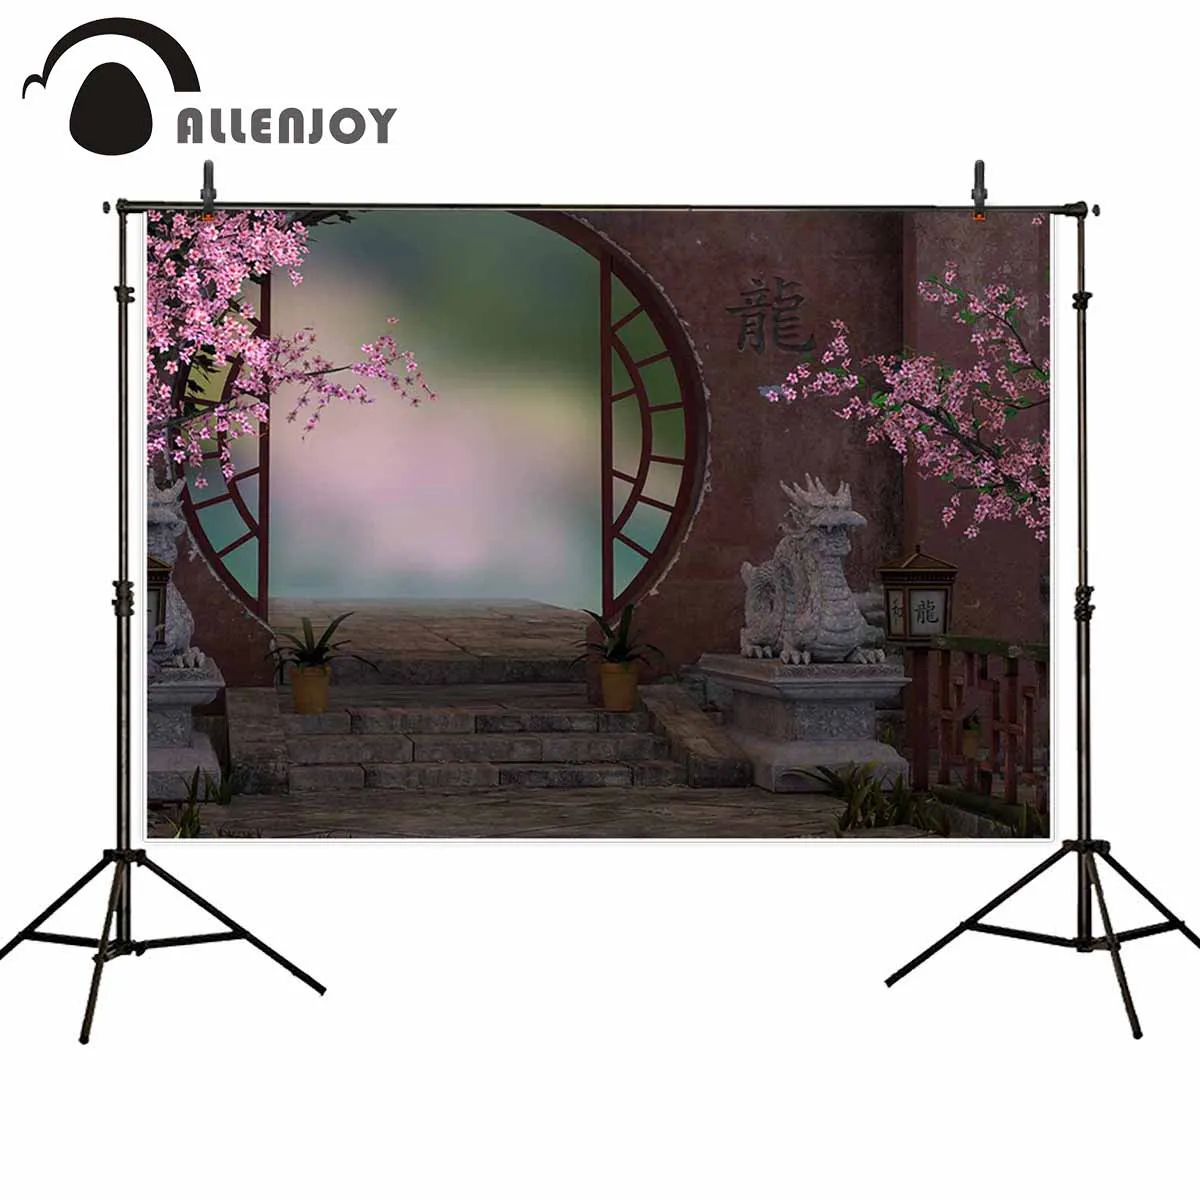 

Allenjoy фото фон в китайском стиле садовая дверь цветок фон для фотосъемки реквизит фотобудка для фотосессии для фотографа